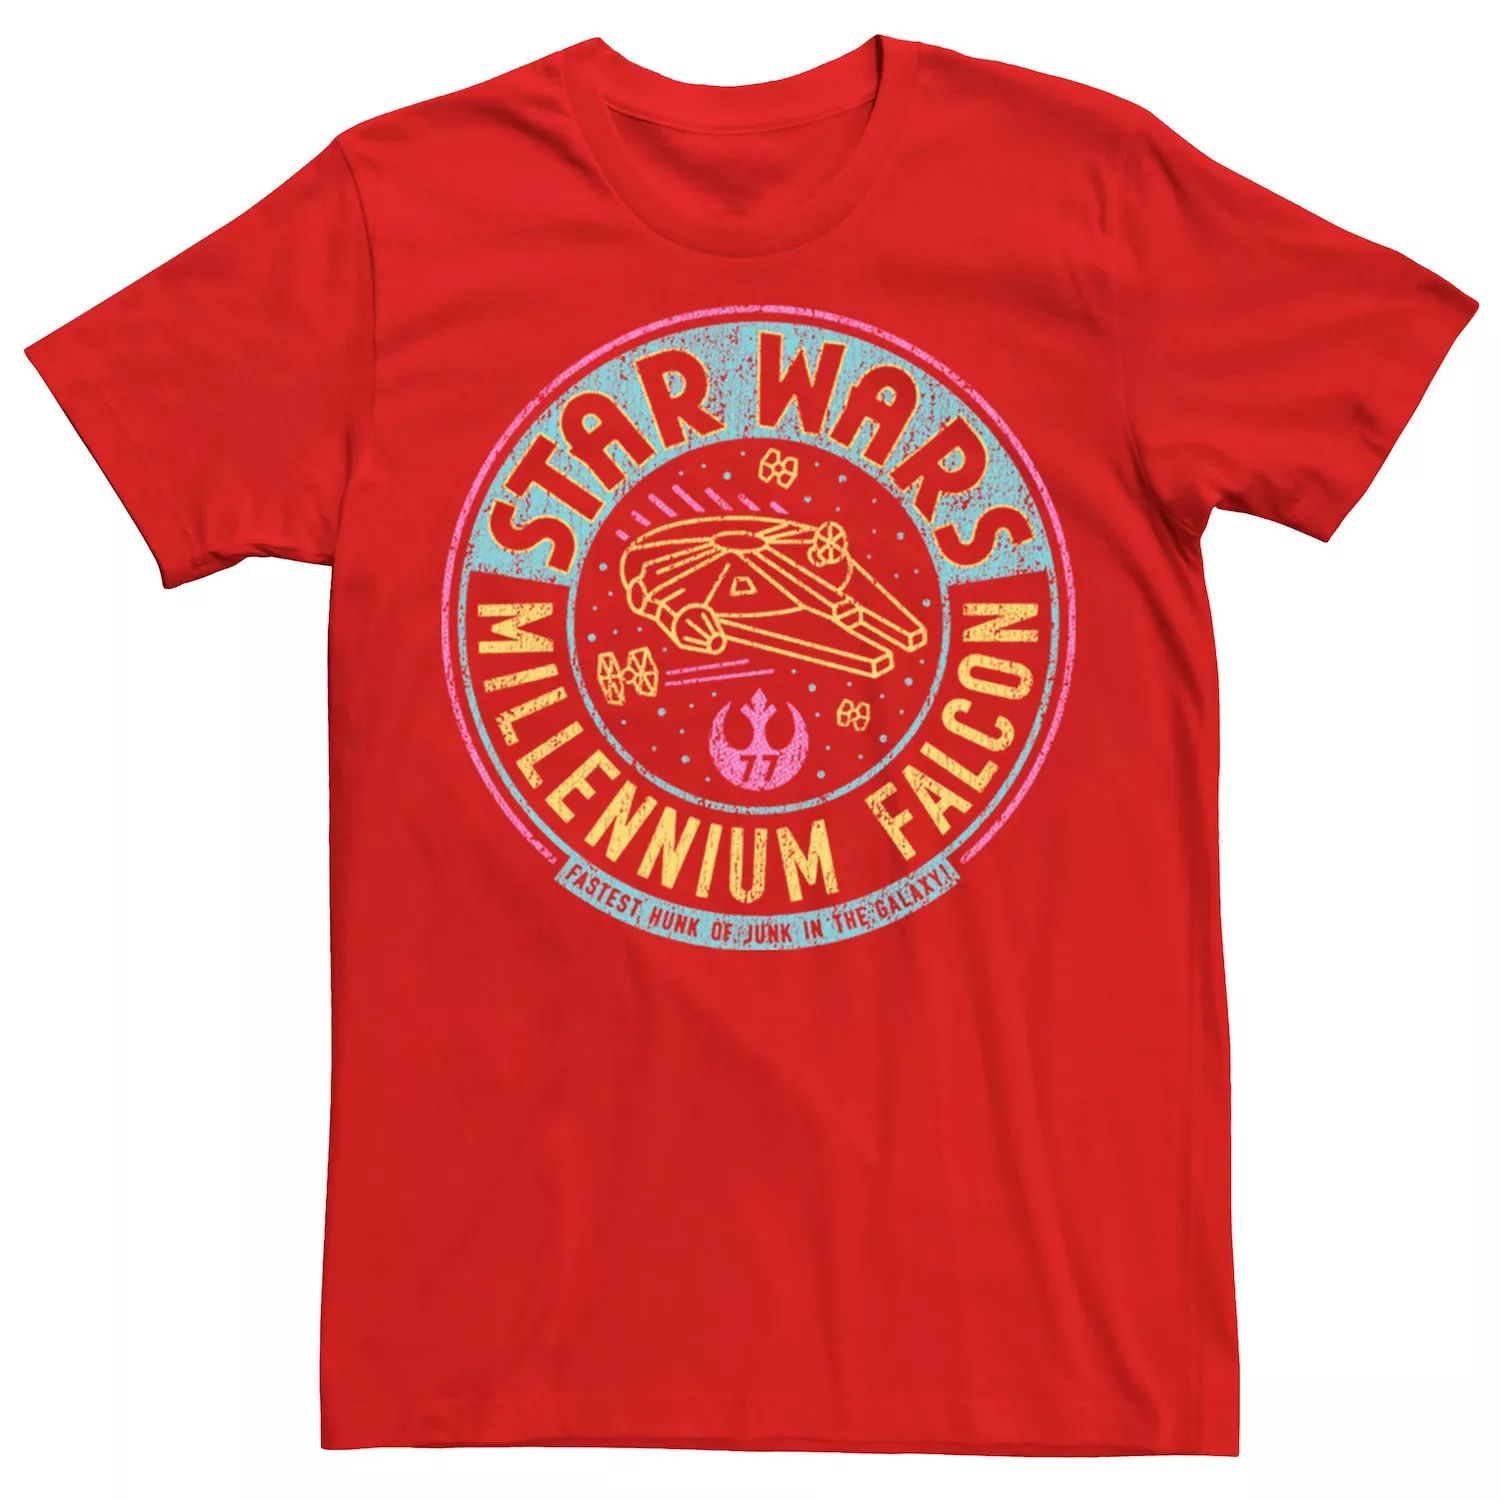 Мужская футболка с неоновым буквенным логотипом «Звездные войны: Сокол тысячелетия» Star Wars, красный мужская футболка с картой таро сокол тысячелетия звездные войны star wars